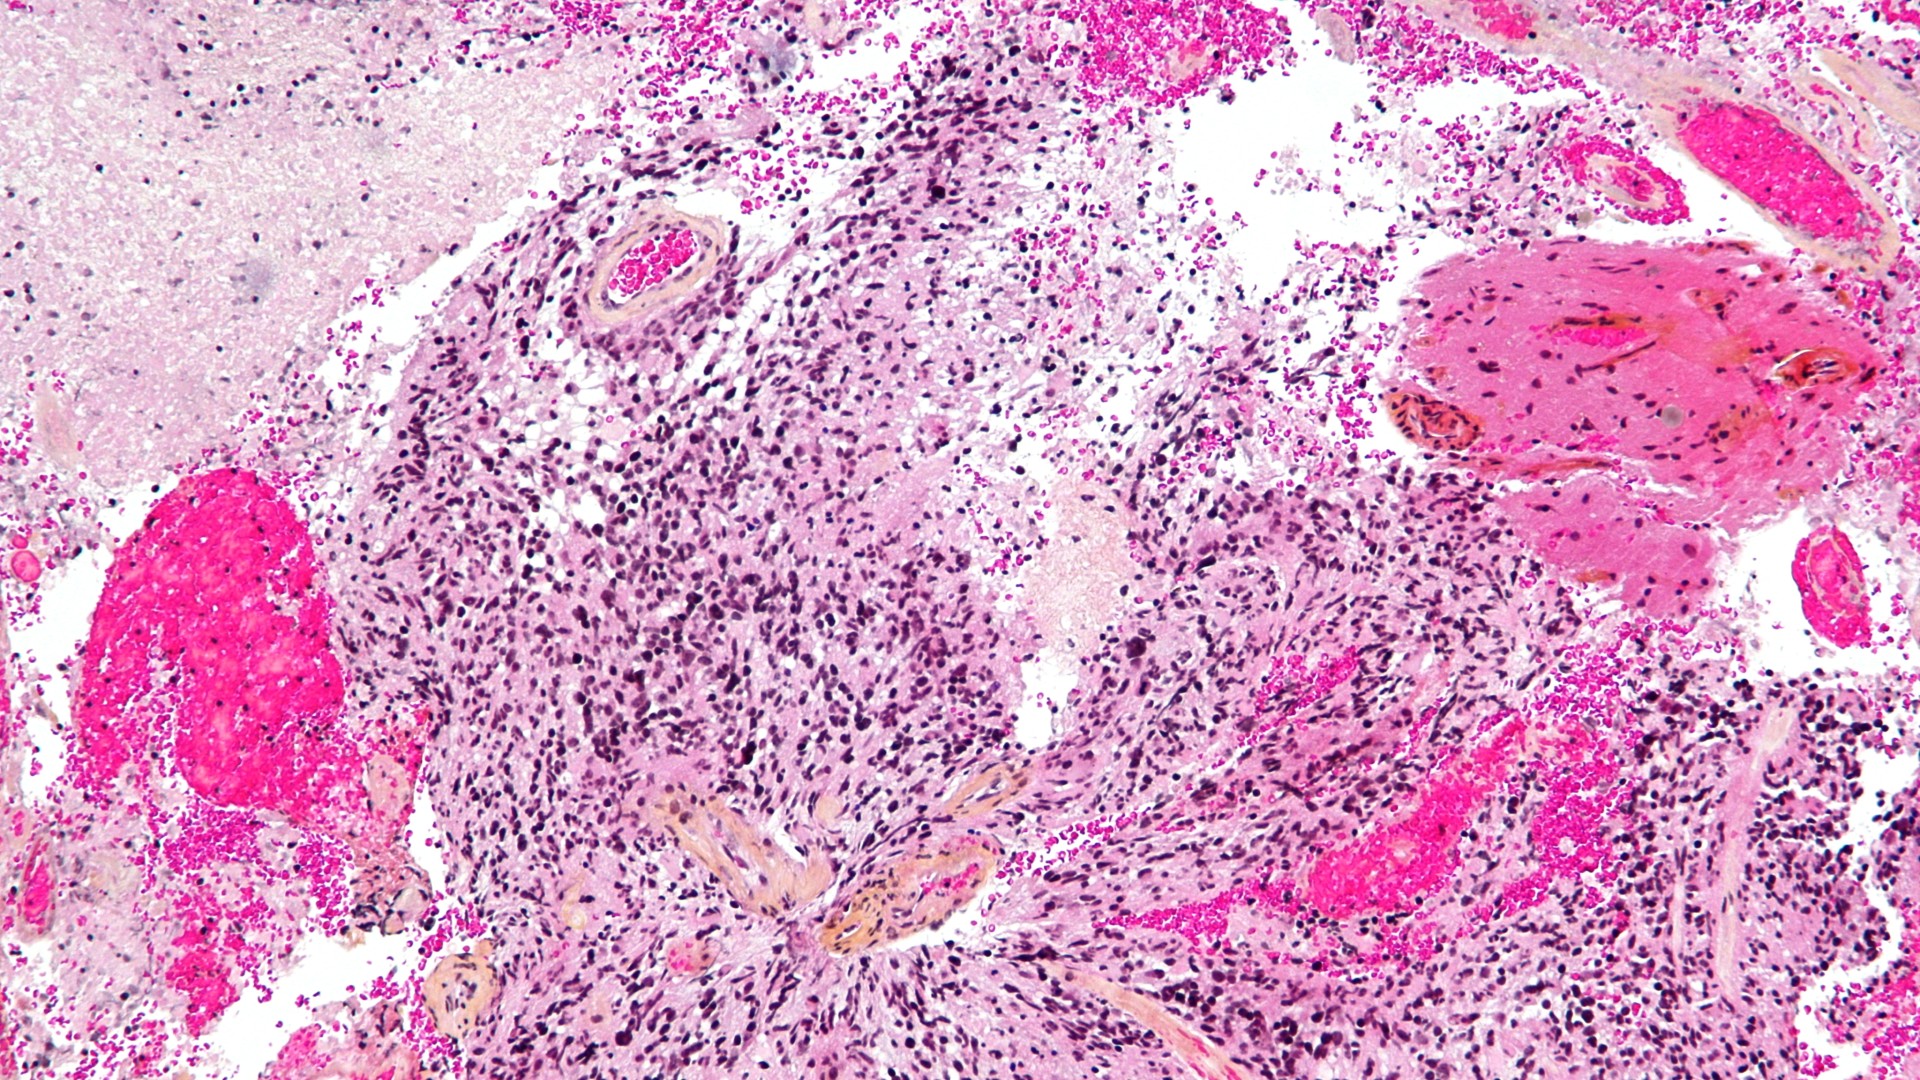 Разноцветное микроскопическое изображение глиобластомы под микроскопом.  Вокруг изображения разбросано множество черных пятен, с более крупными круглыми ярко-розовыми пятнами, а также более светло-розовыми и светло-желтыми пятнами разных форм/размеров.  Между ними видны белые просветы.